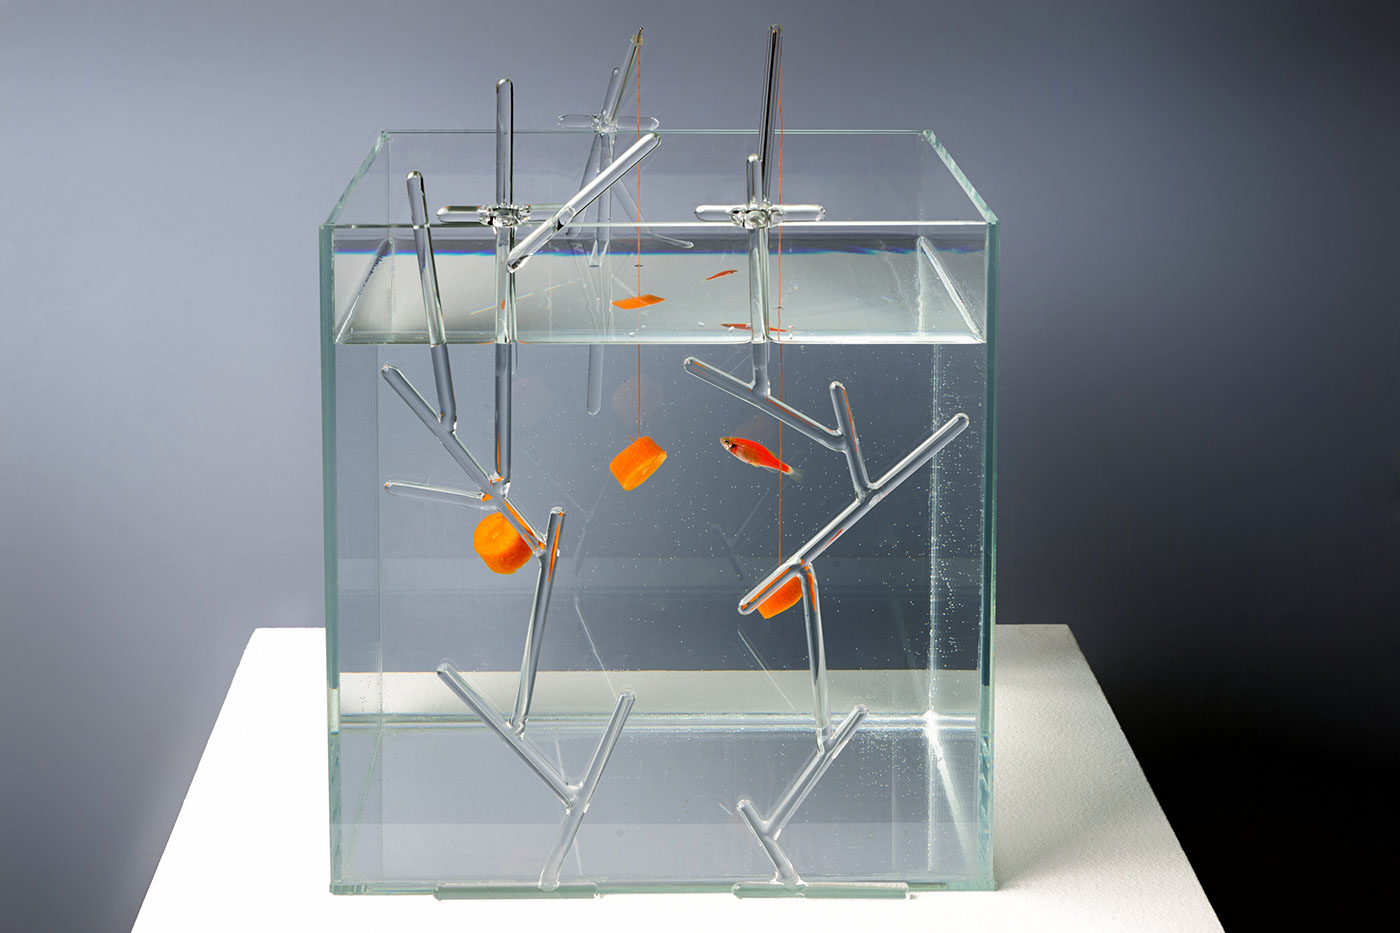 aquarium fish luxury equipments interiordesign glass design glass sculpture aquatic design